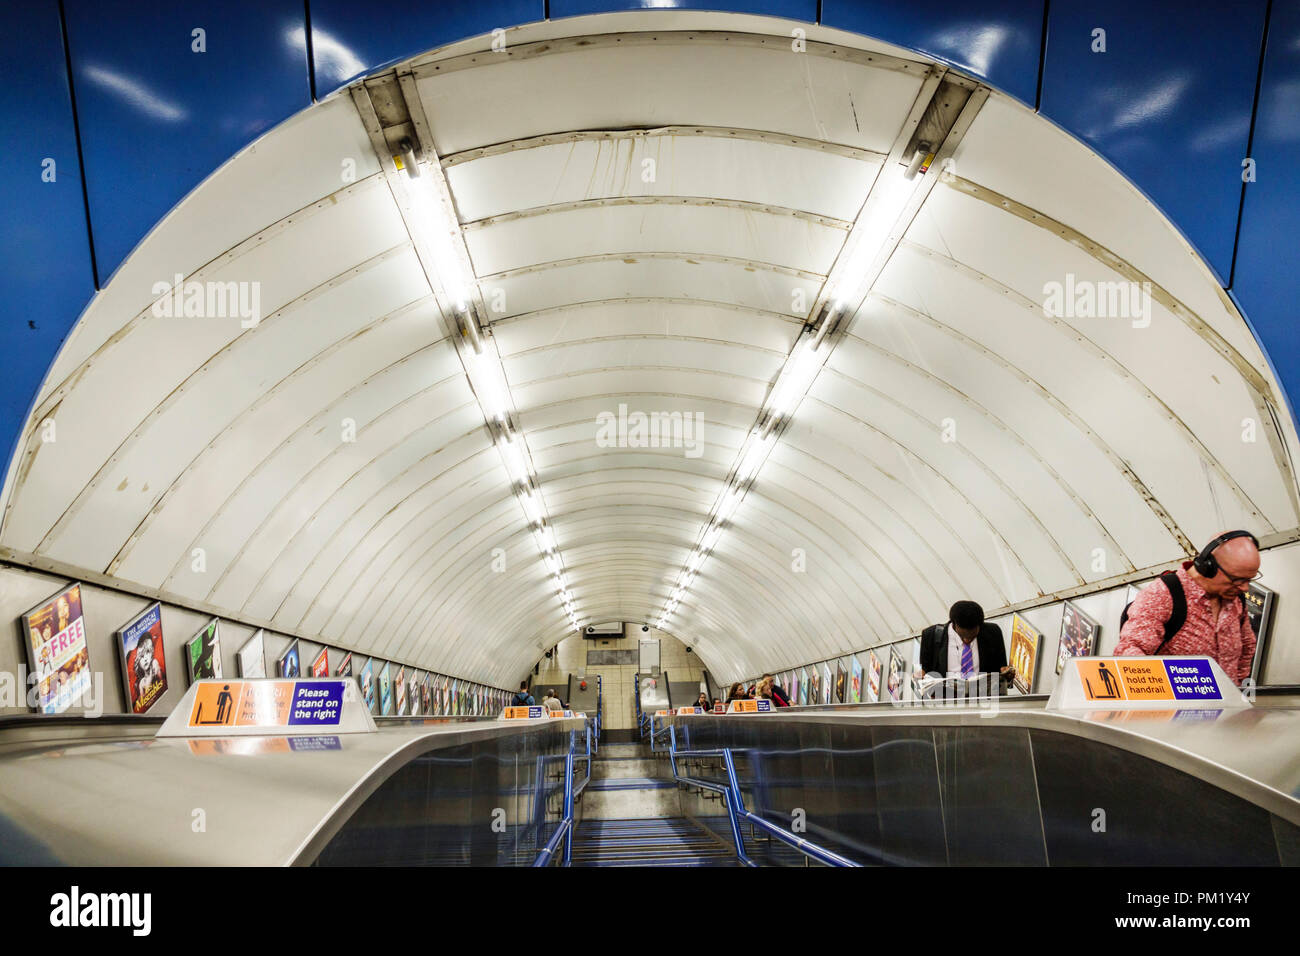 Londres Angleterre,Royaume-Uni,Charing Cross métro Station métro métro tube métro, intérieur, escalier roulant, homme hommes, UK GB anglais Europe,UK180815029 Banque D'Images